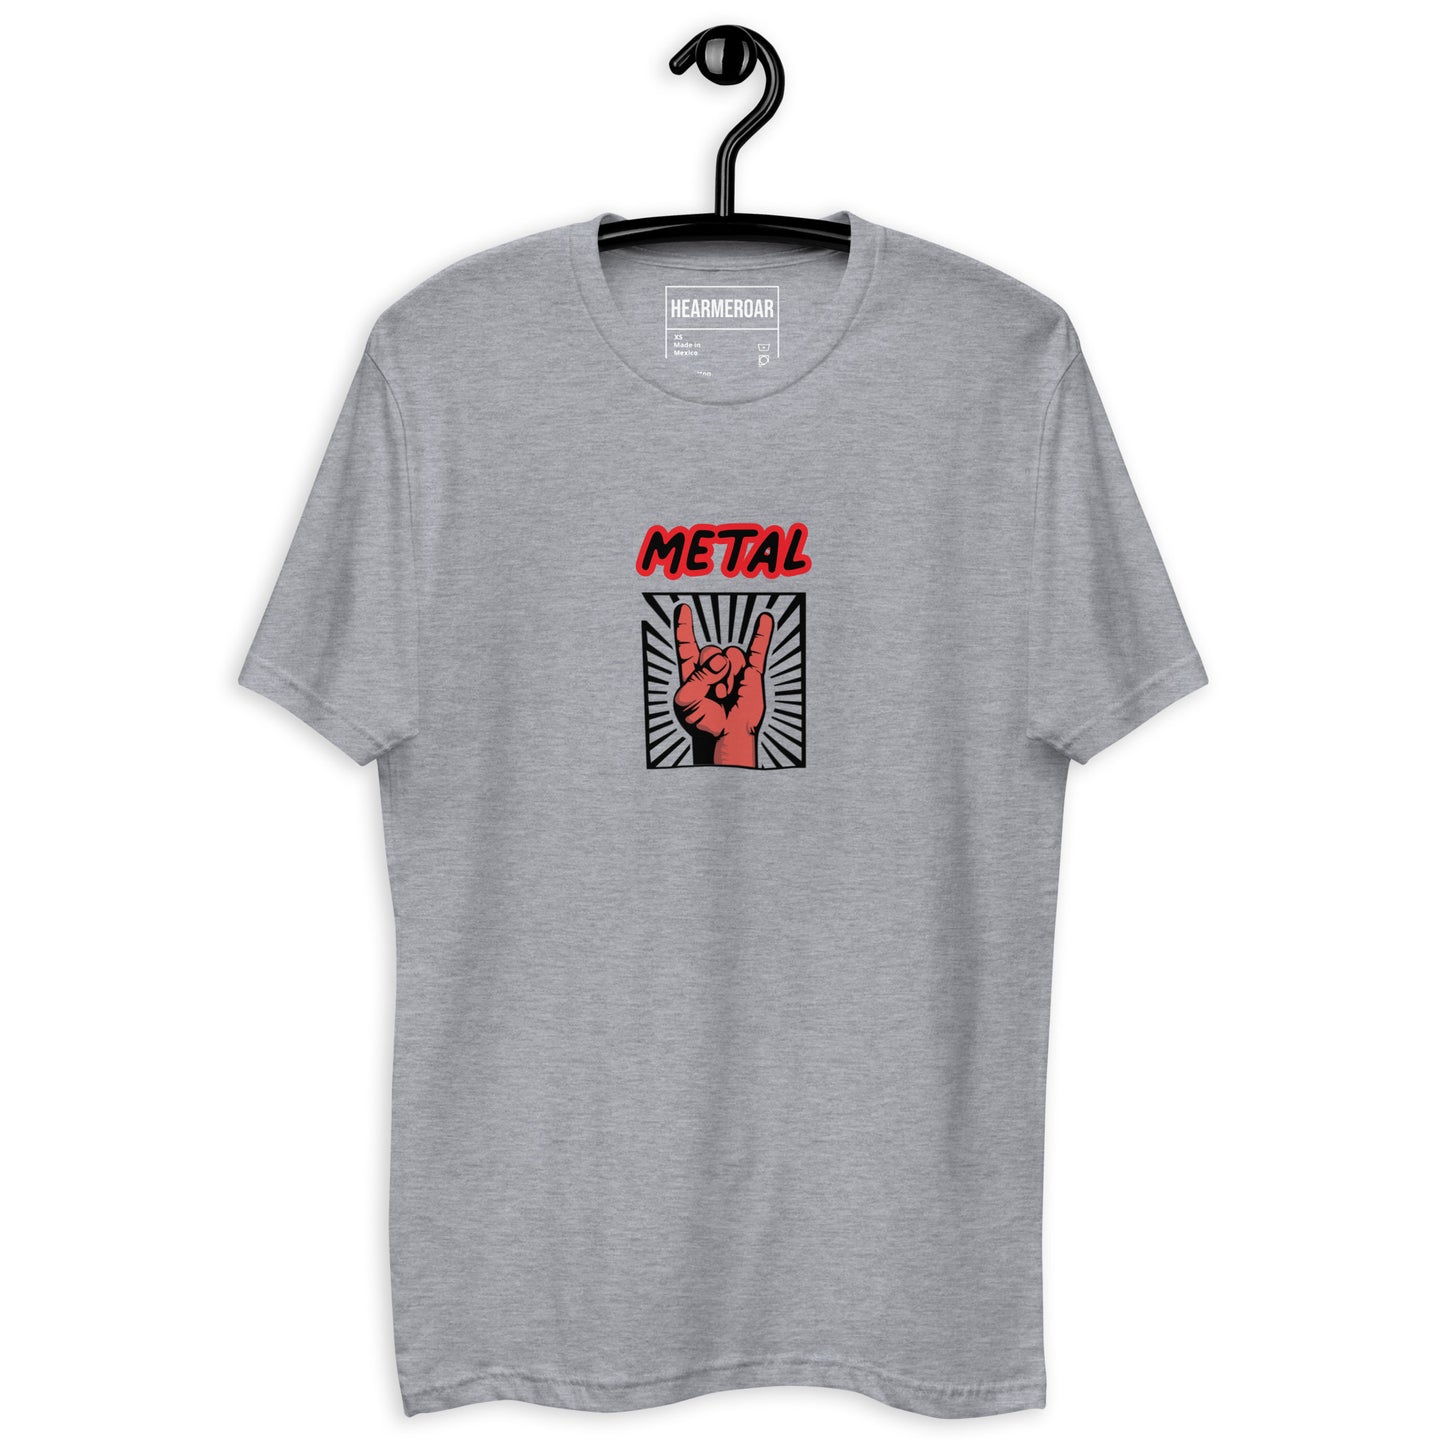 Звичайно, чорні люди слухають метал / Чоловіча футболка з металом